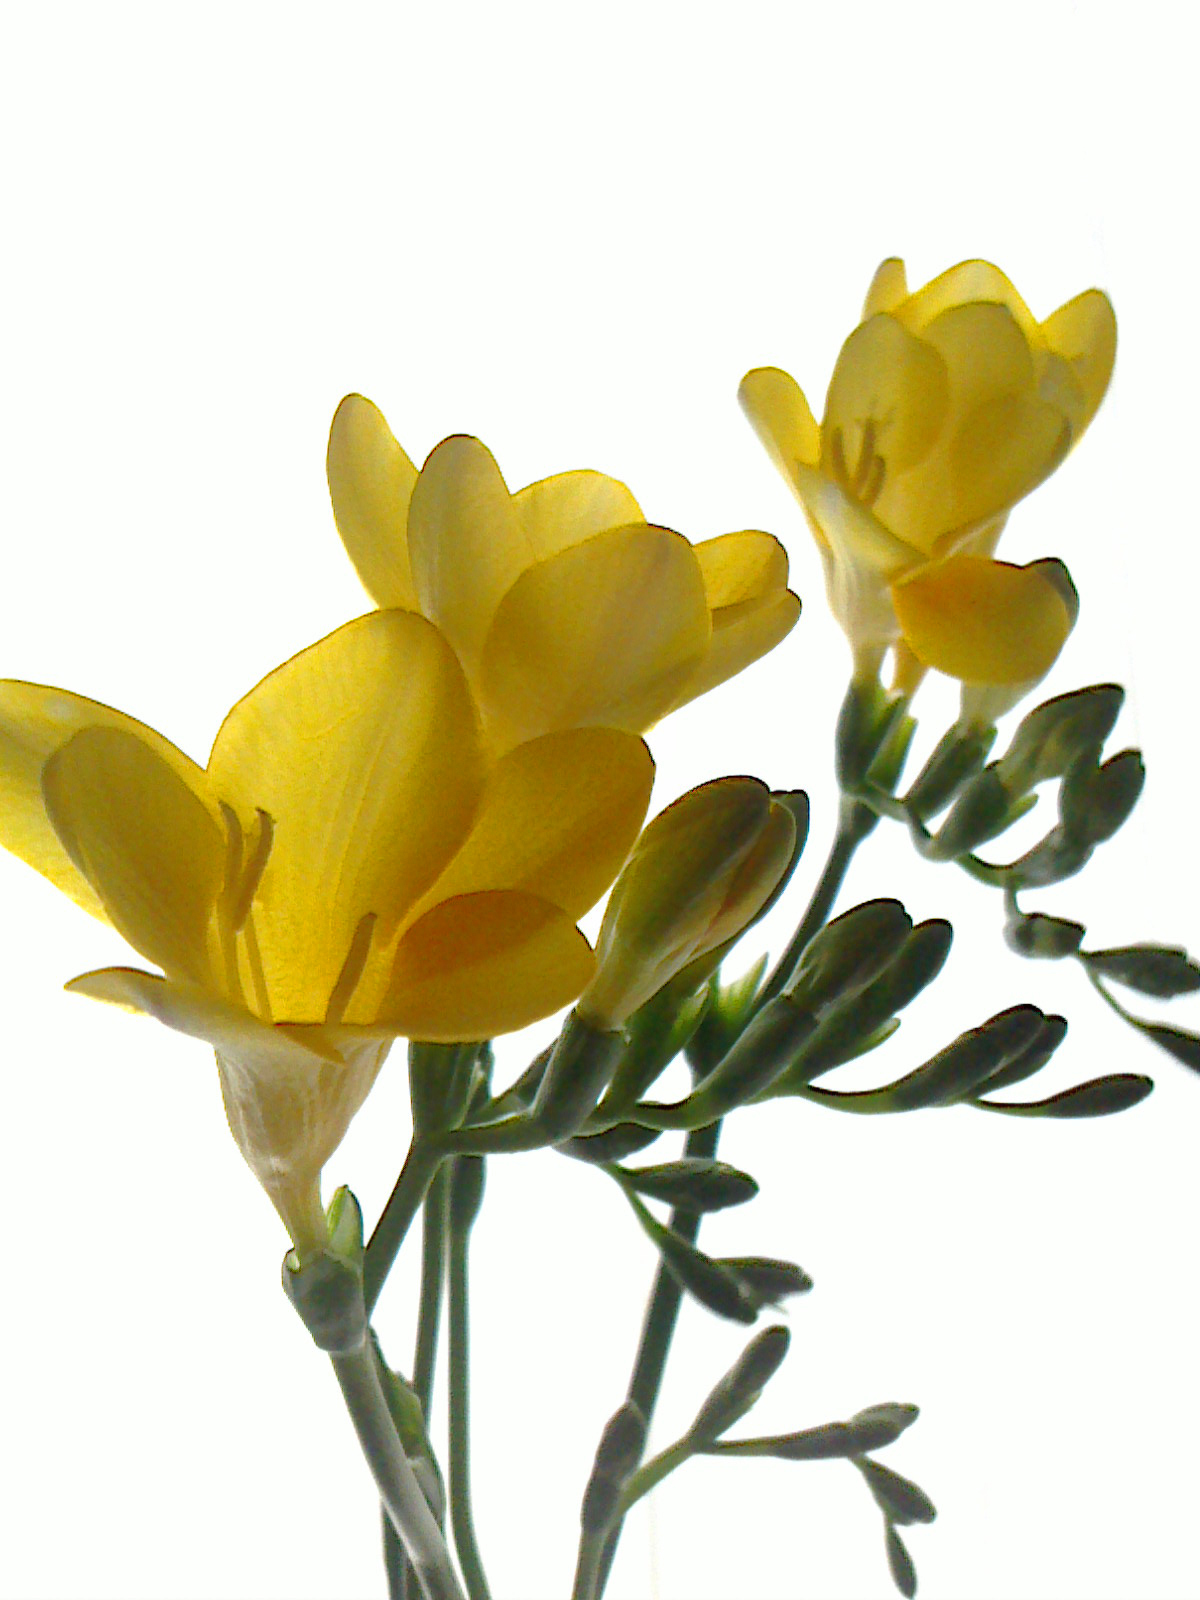 連載 素敵に門出を祝える春の花フリージア 色別の花言葉とその理由や伝説について解説 暮らし の